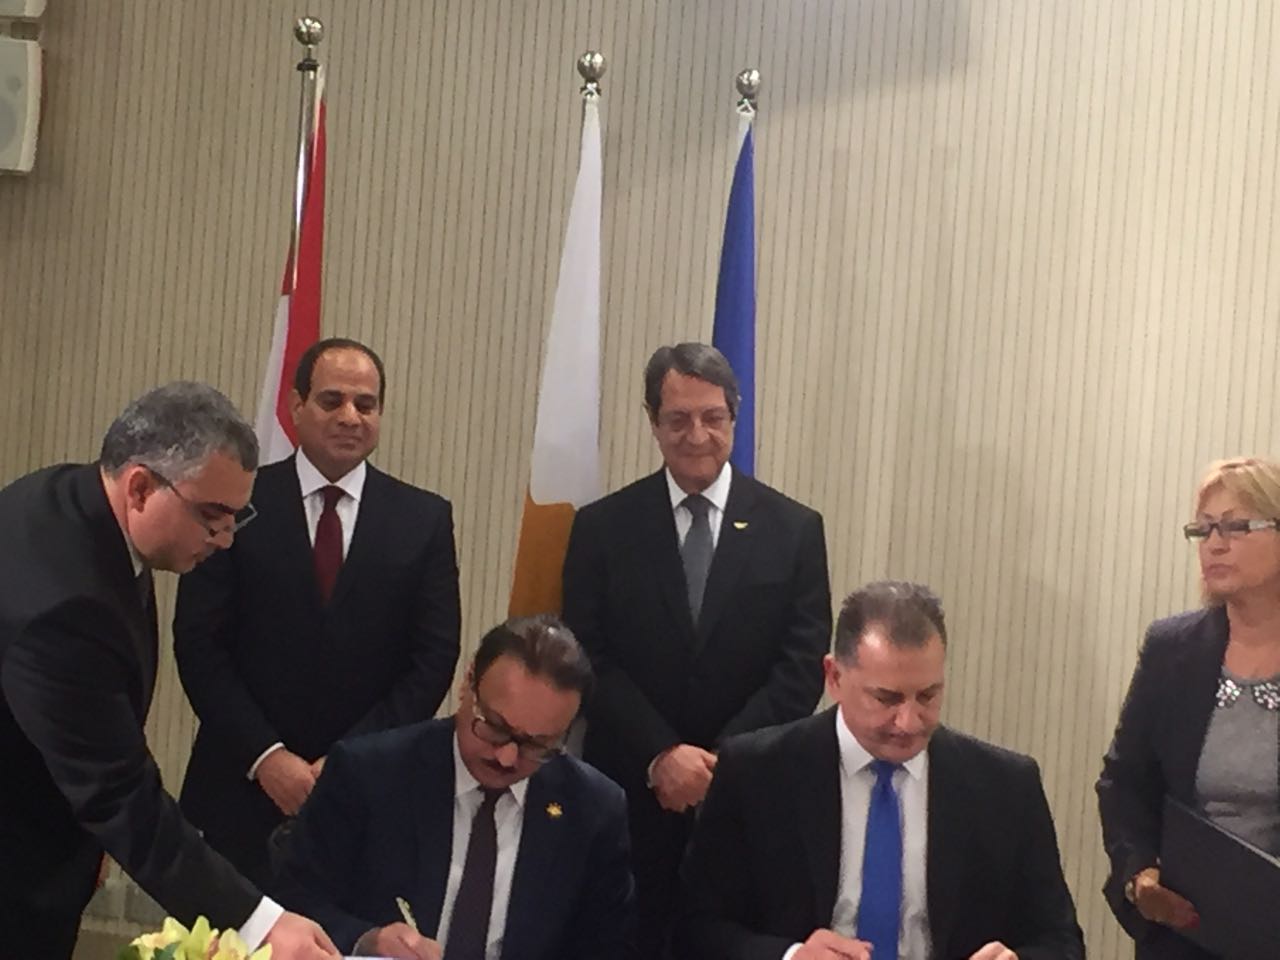 توقيع مذكرة تعاون في مجال الأعمال والاتصال بين مصر وقبرص